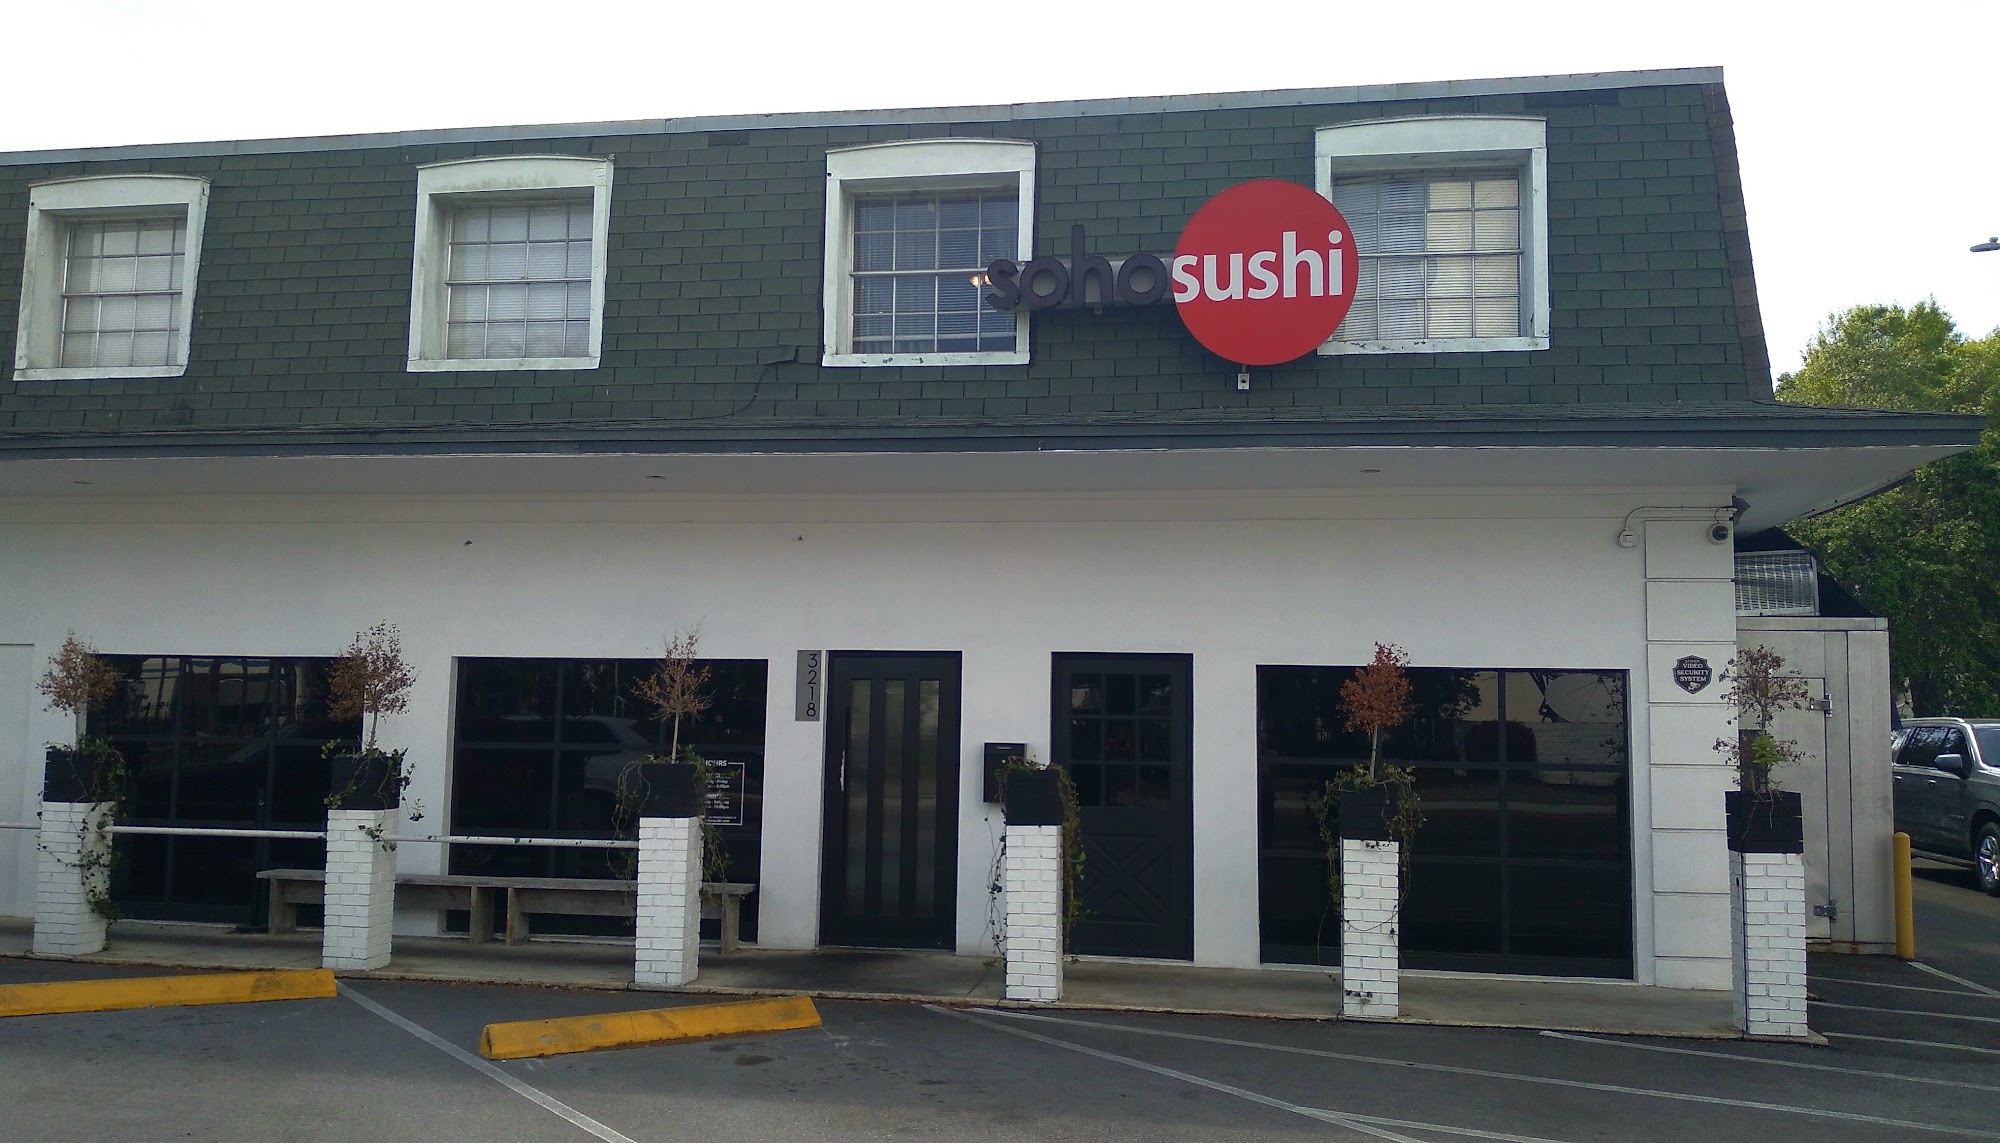 SoHo Sushi